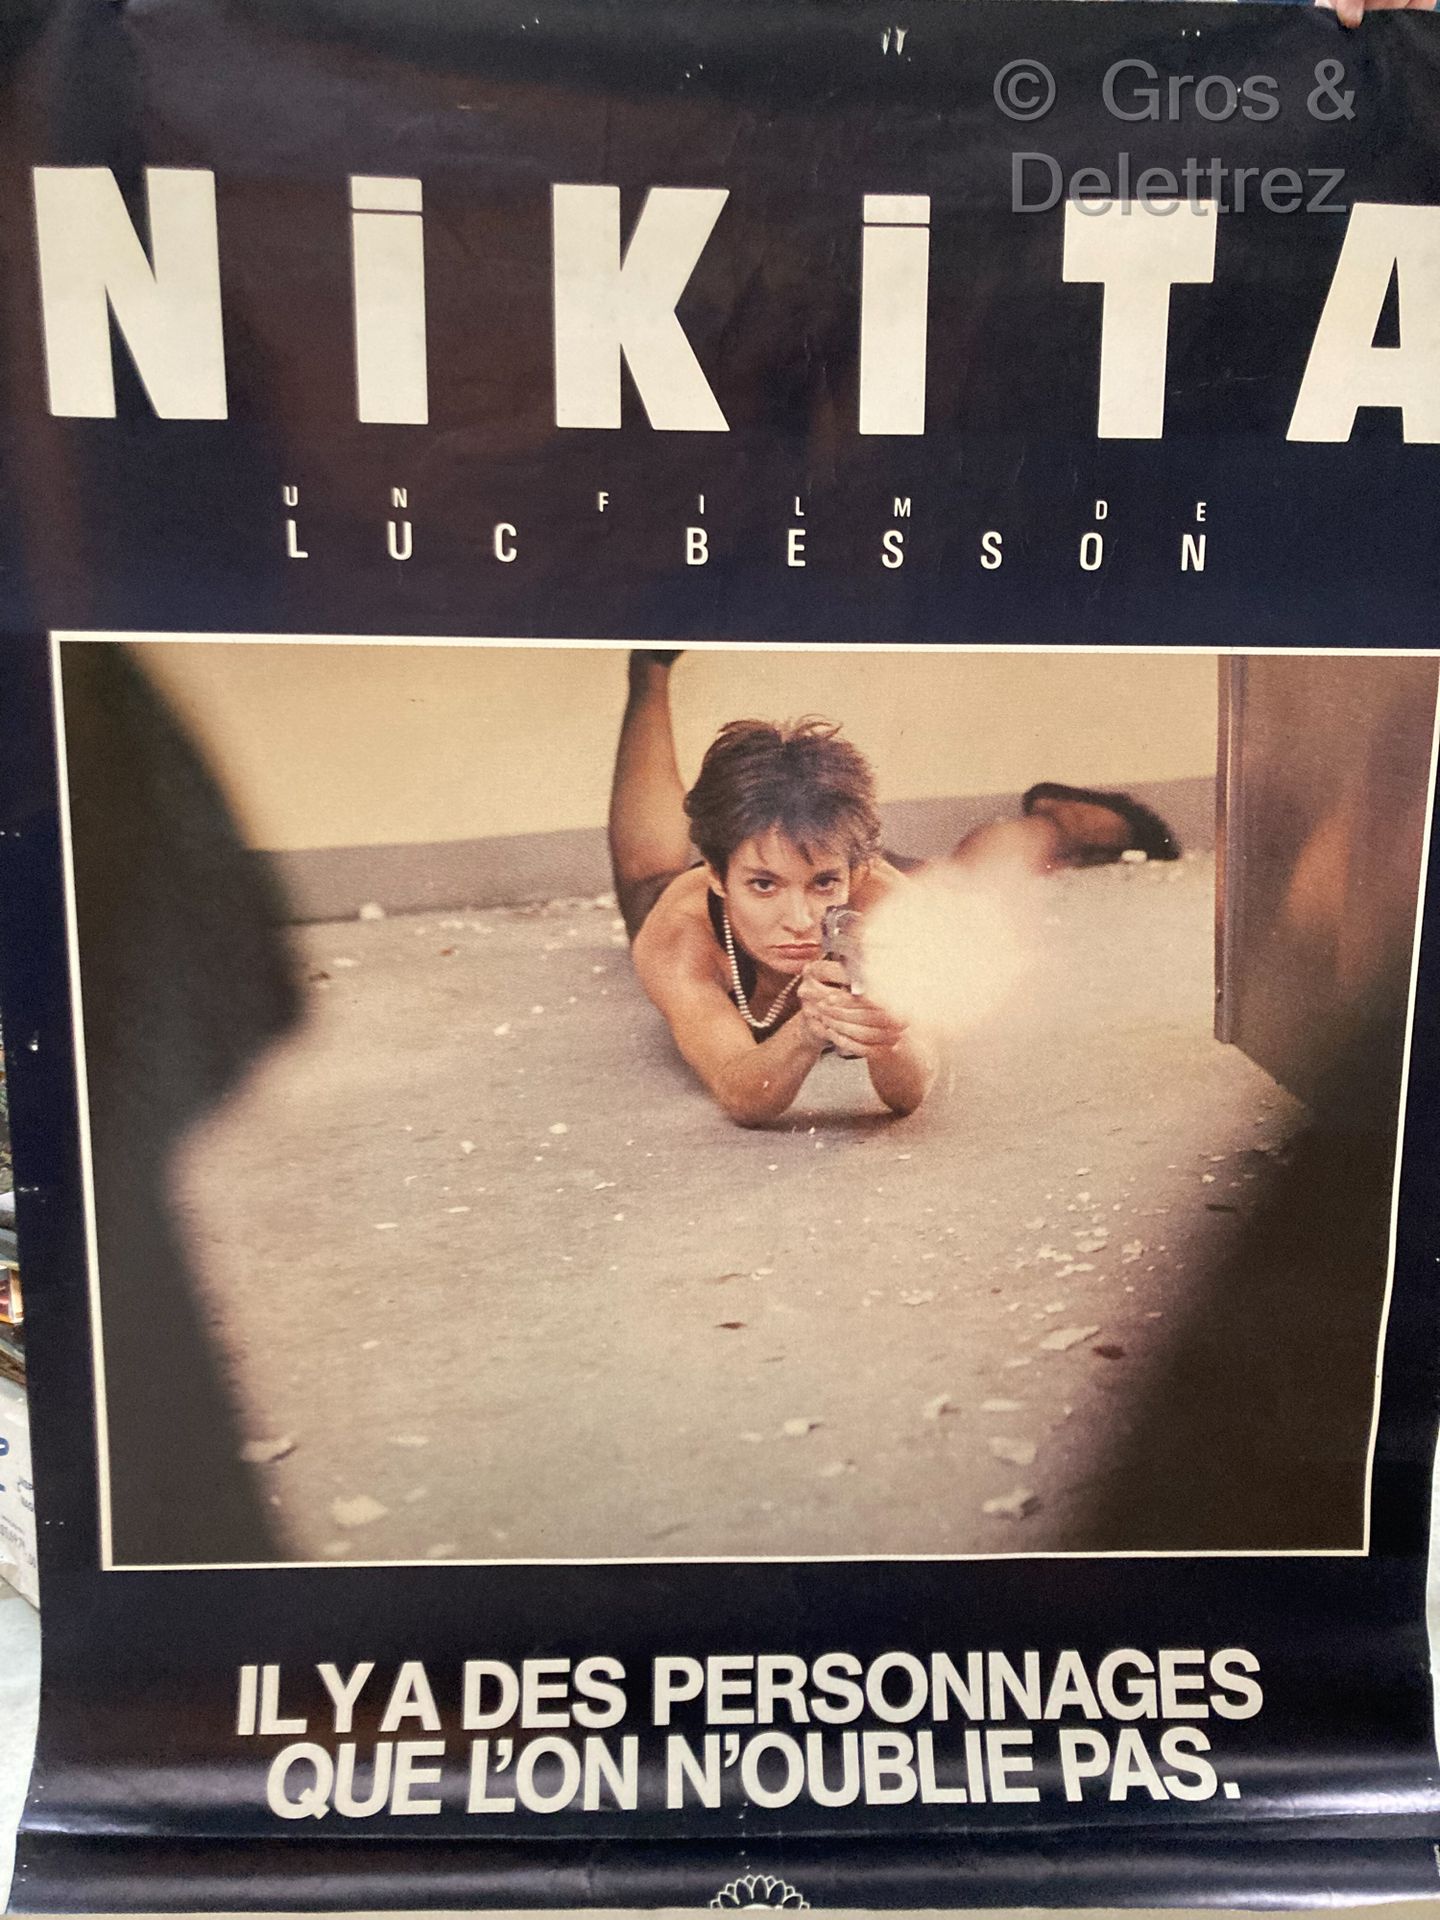 LUC BESSON NIKITA

affiche de cinema

157 x 116 cm. Trous